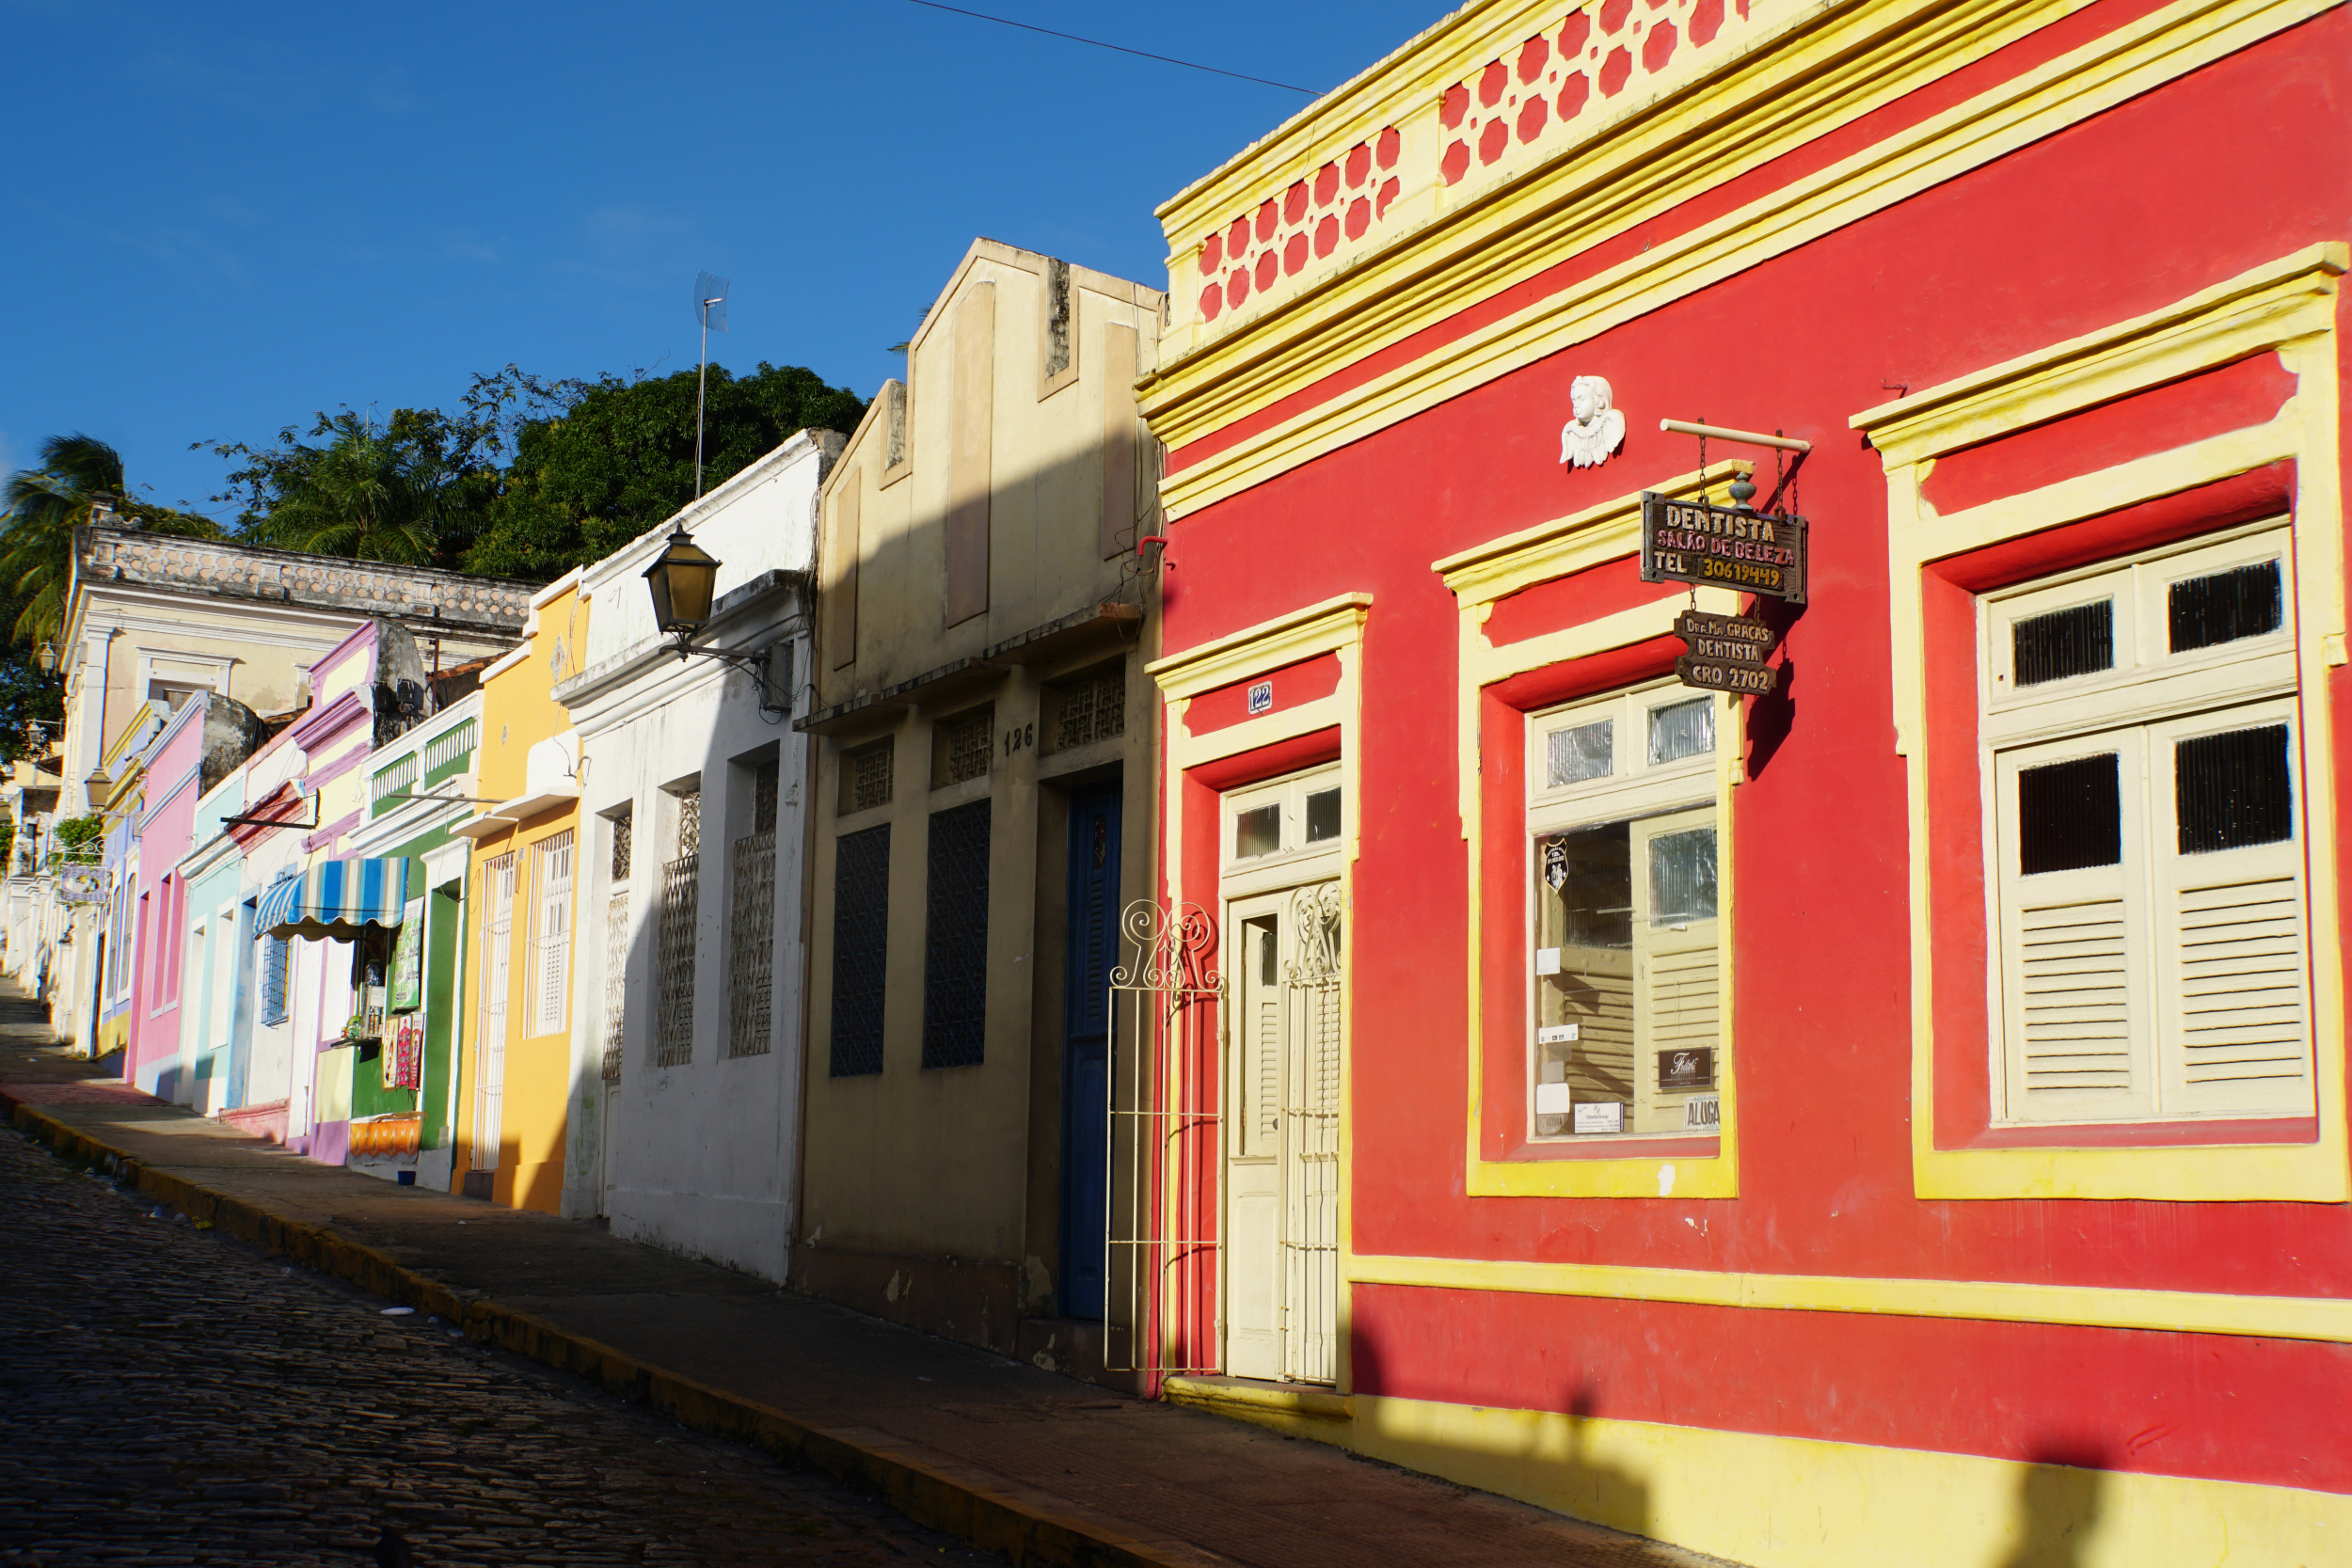 6. Colorful streets in Olinda